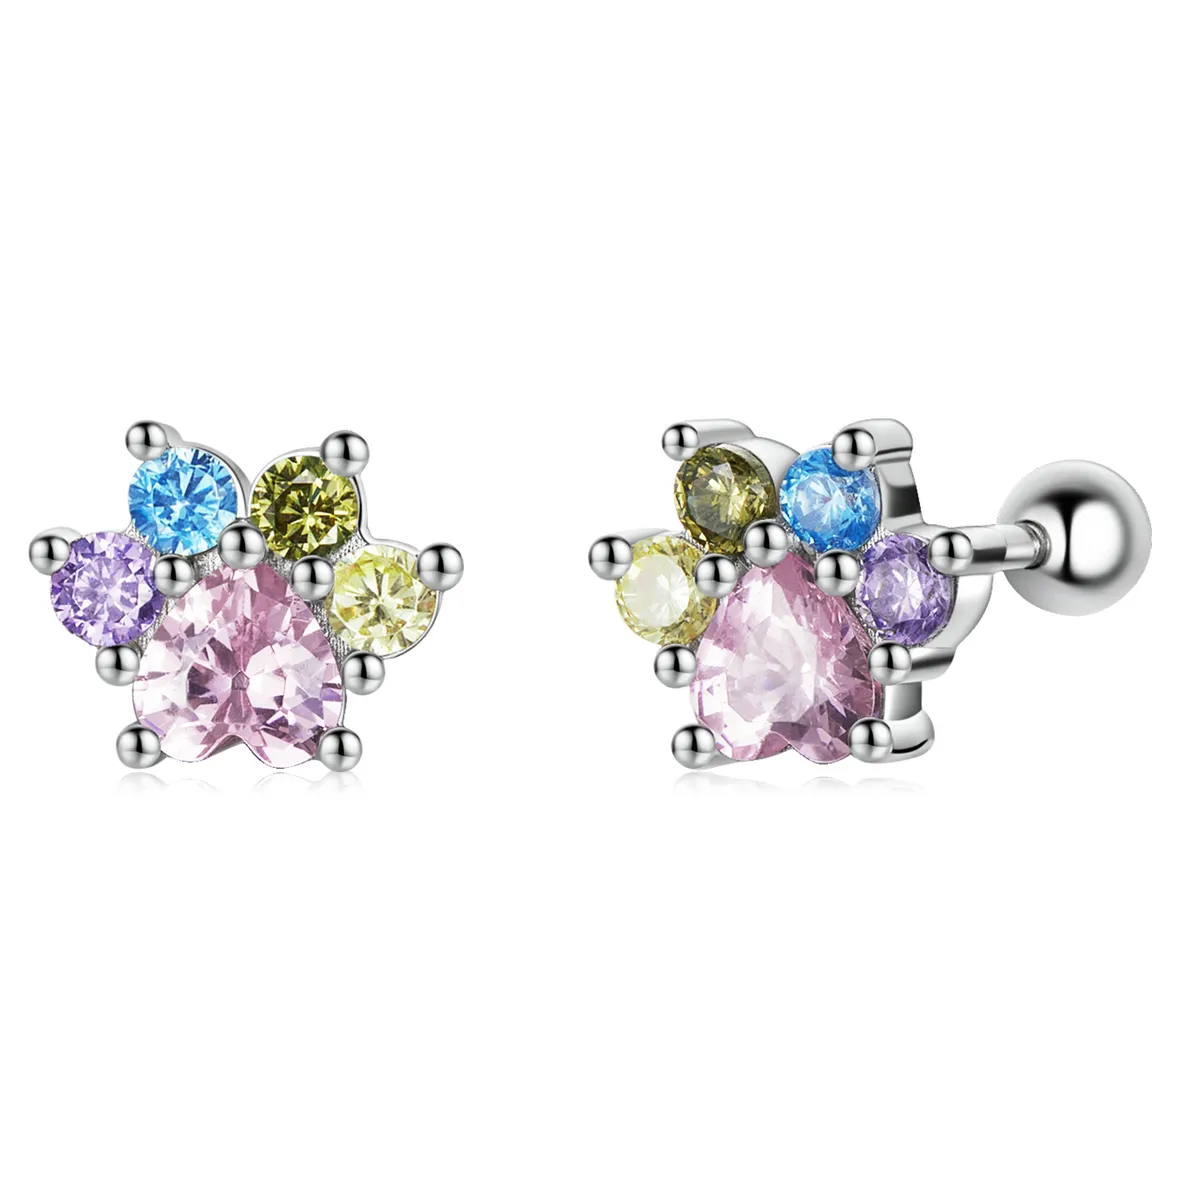 Studuri auriculare cu gheare drăguțe și zirconiu colorat în stil Pandora - SCE1334